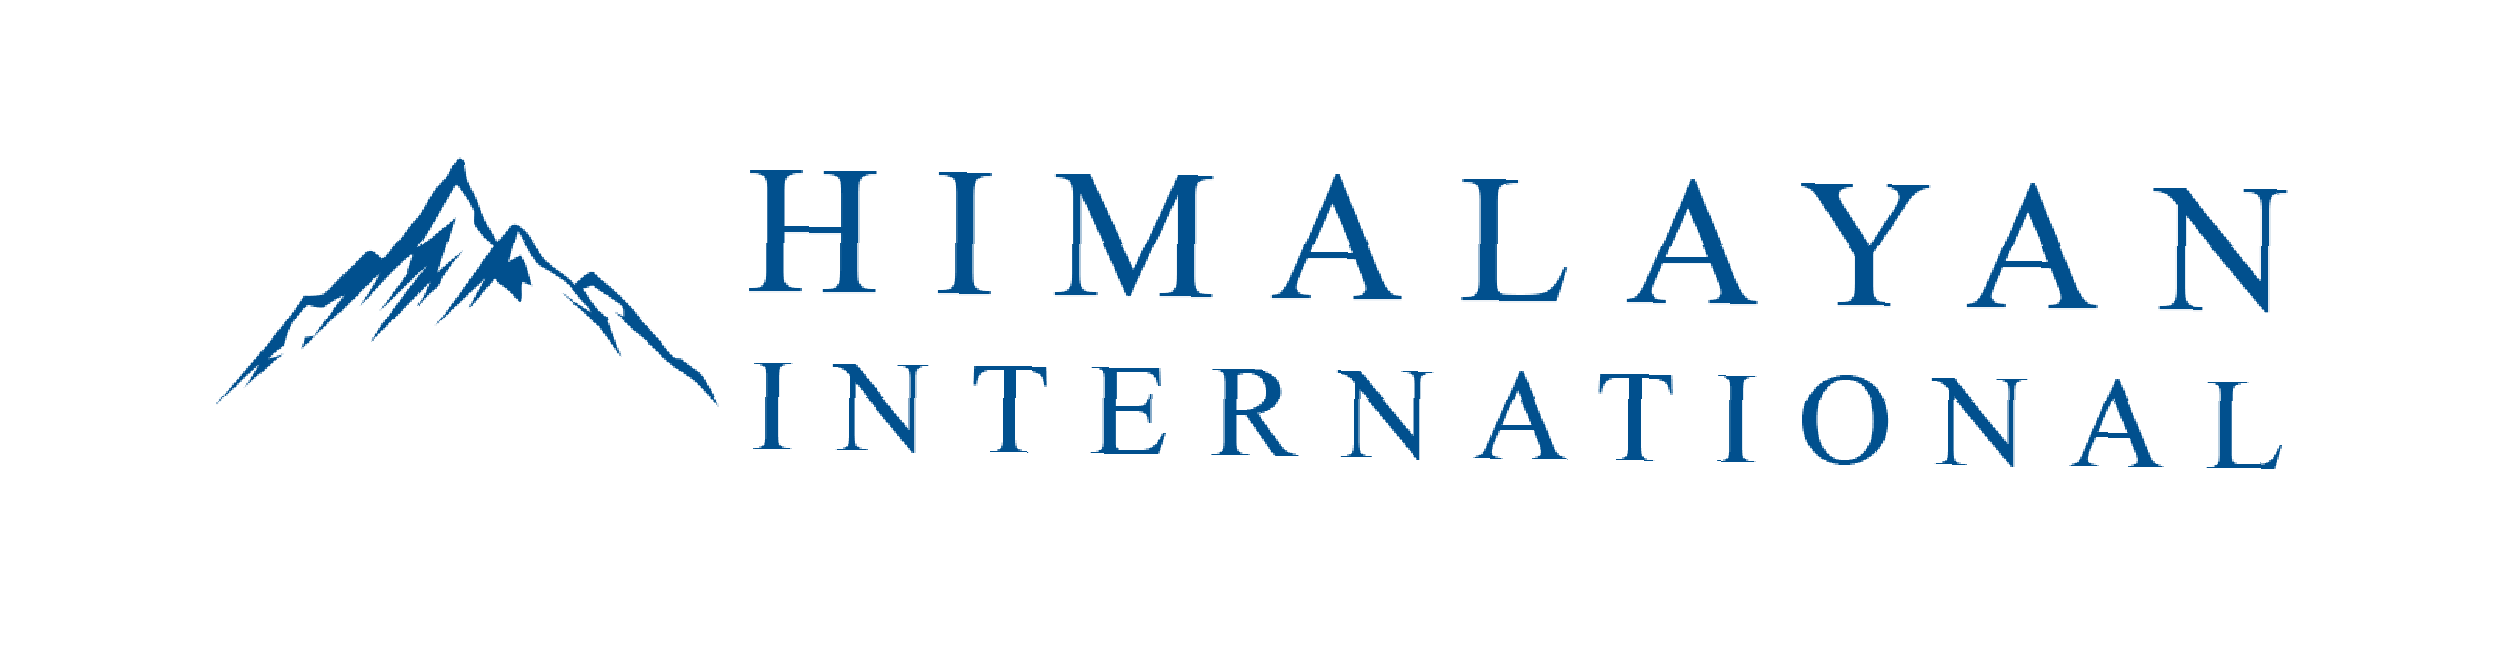 Himalayan International